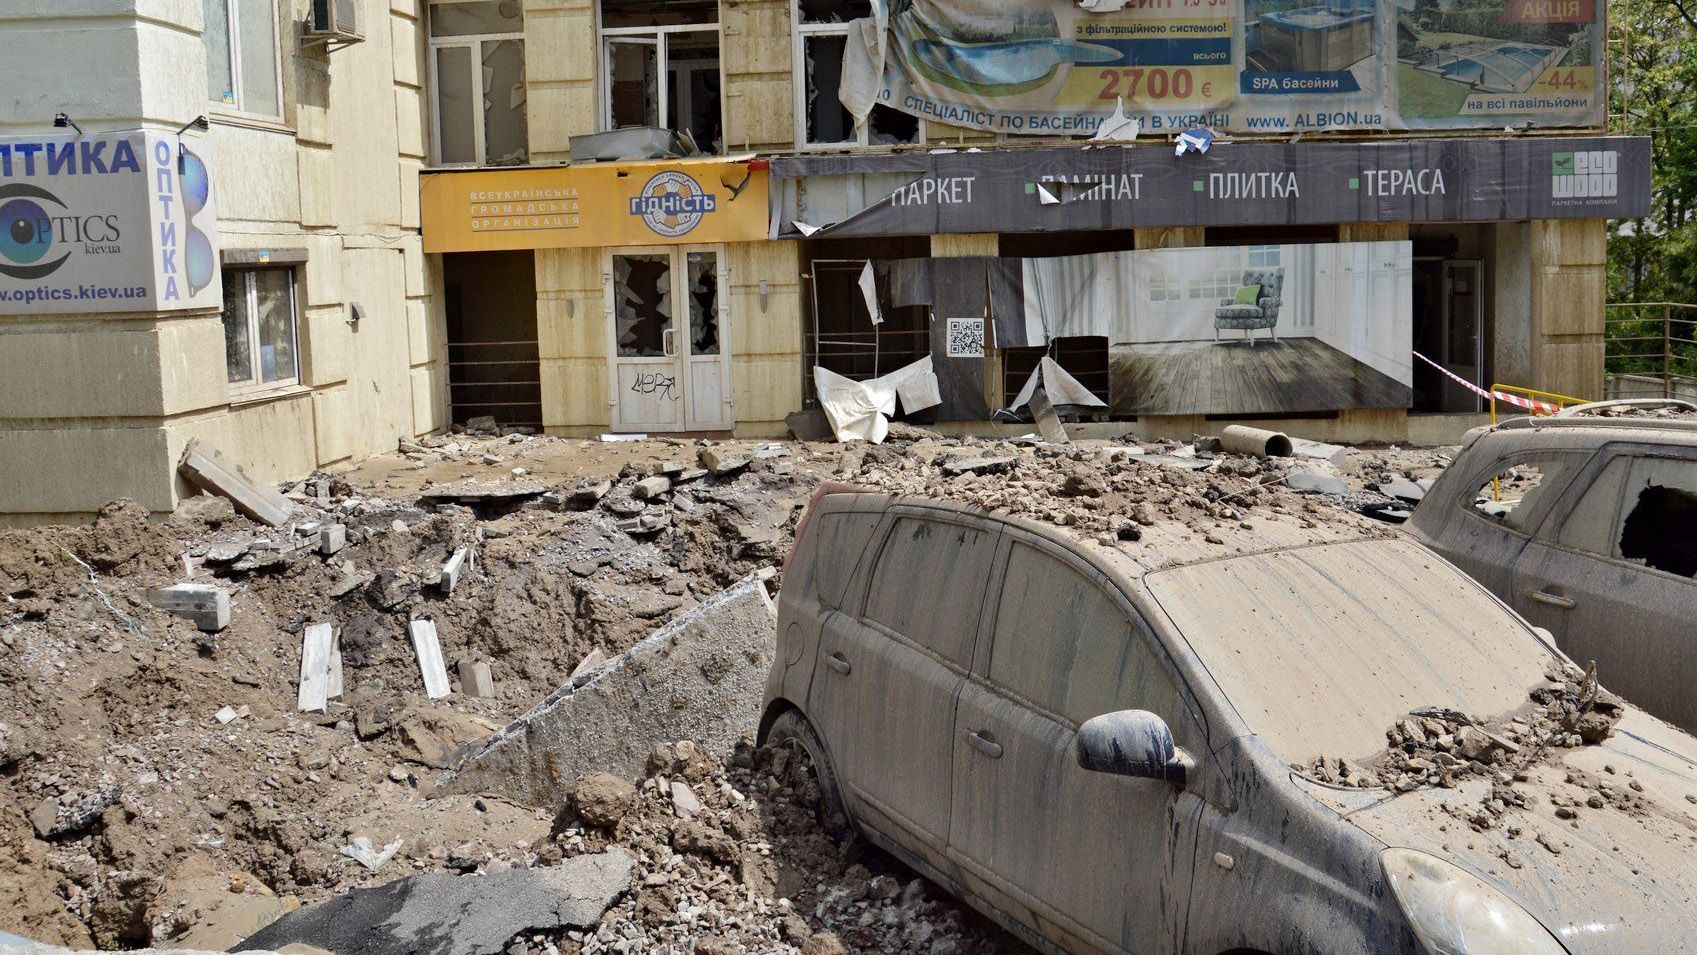 7-этажный фонтан и разбитые авто: кто компенсирует последствия тестирования энергетиков в Киеве